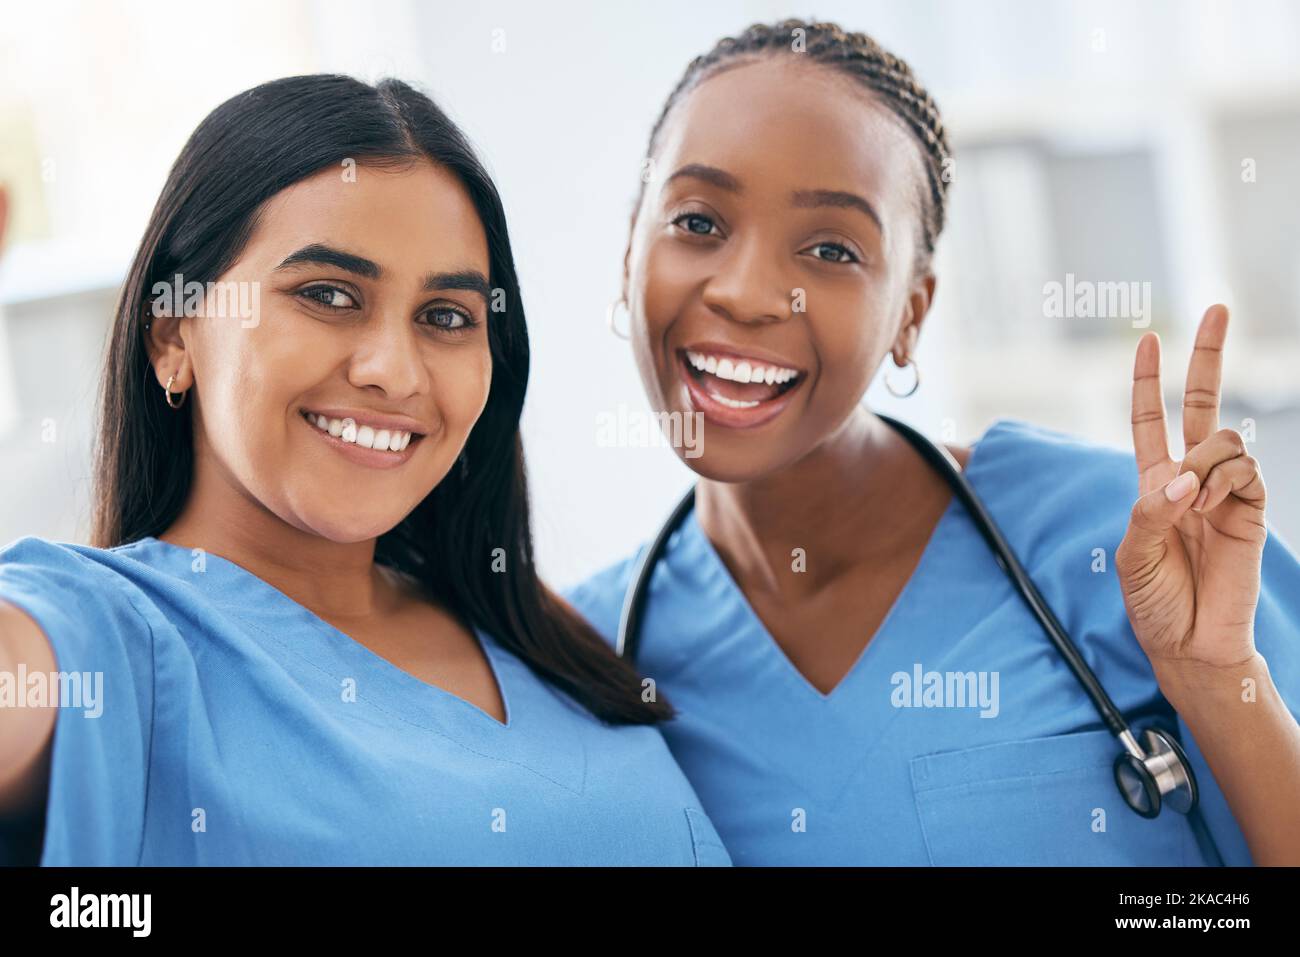 Infirmières, étudiants en médecine et femmes prenant le selfie pour les médias sociaux, la collaboration ou l'engagement de soins de santé à l'hôpital. Heureux, portrait et diversité Banque D'Images